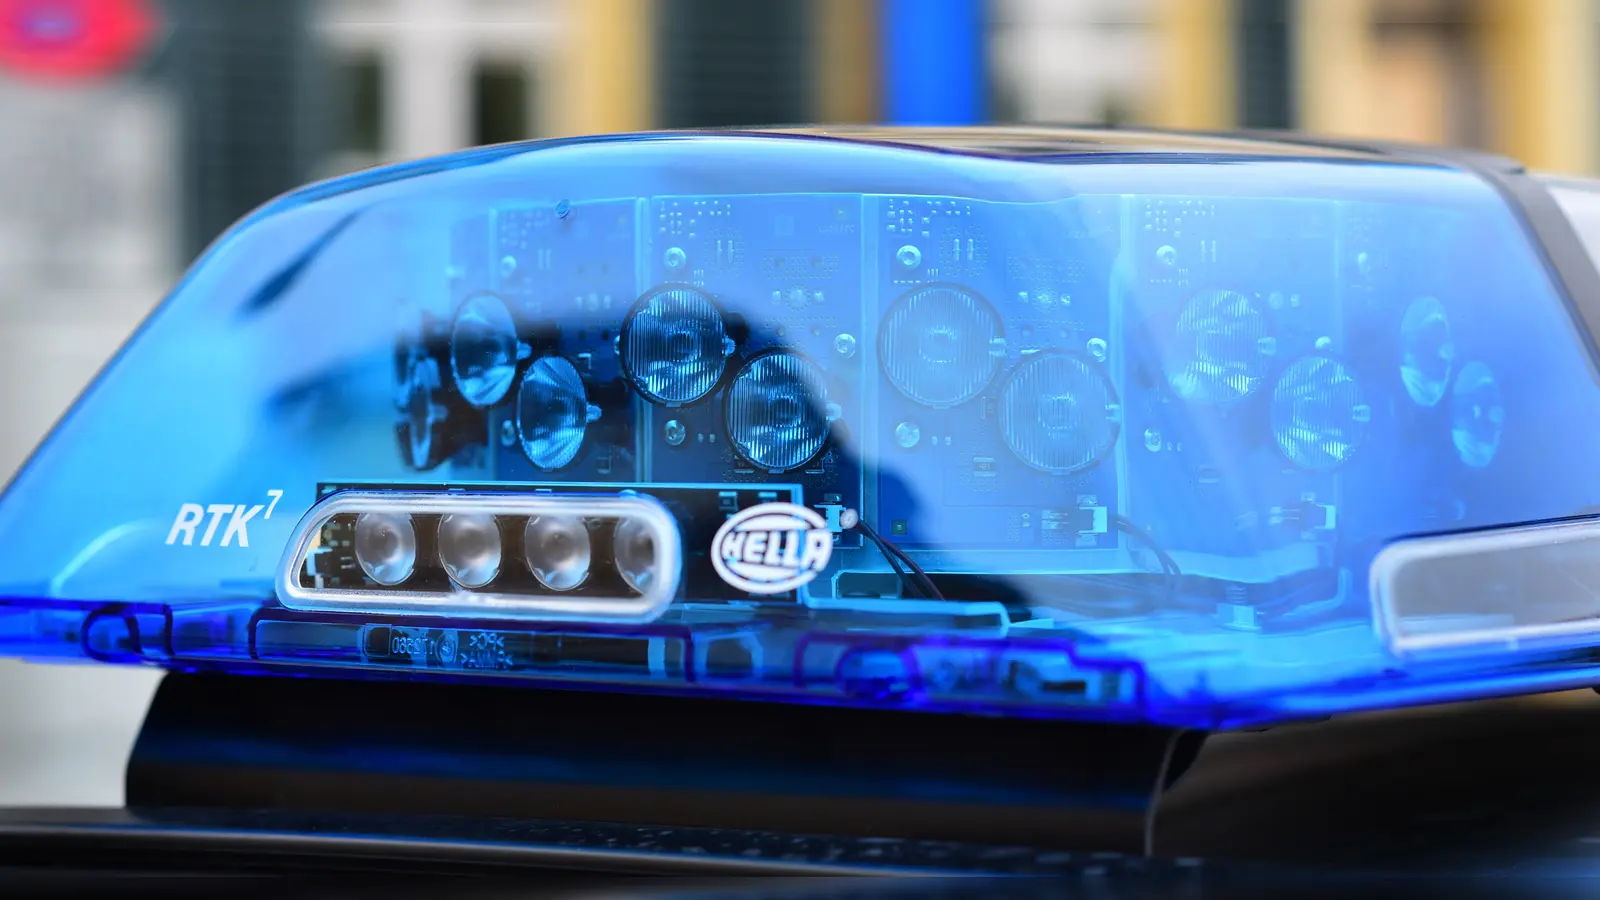 Die Kriminalpolizei sucht Zeugen. Ein 32-Jähriger wurde in Ansbach geschlagen und beraubt. (Symbolbild: James Edward Albright Jr)